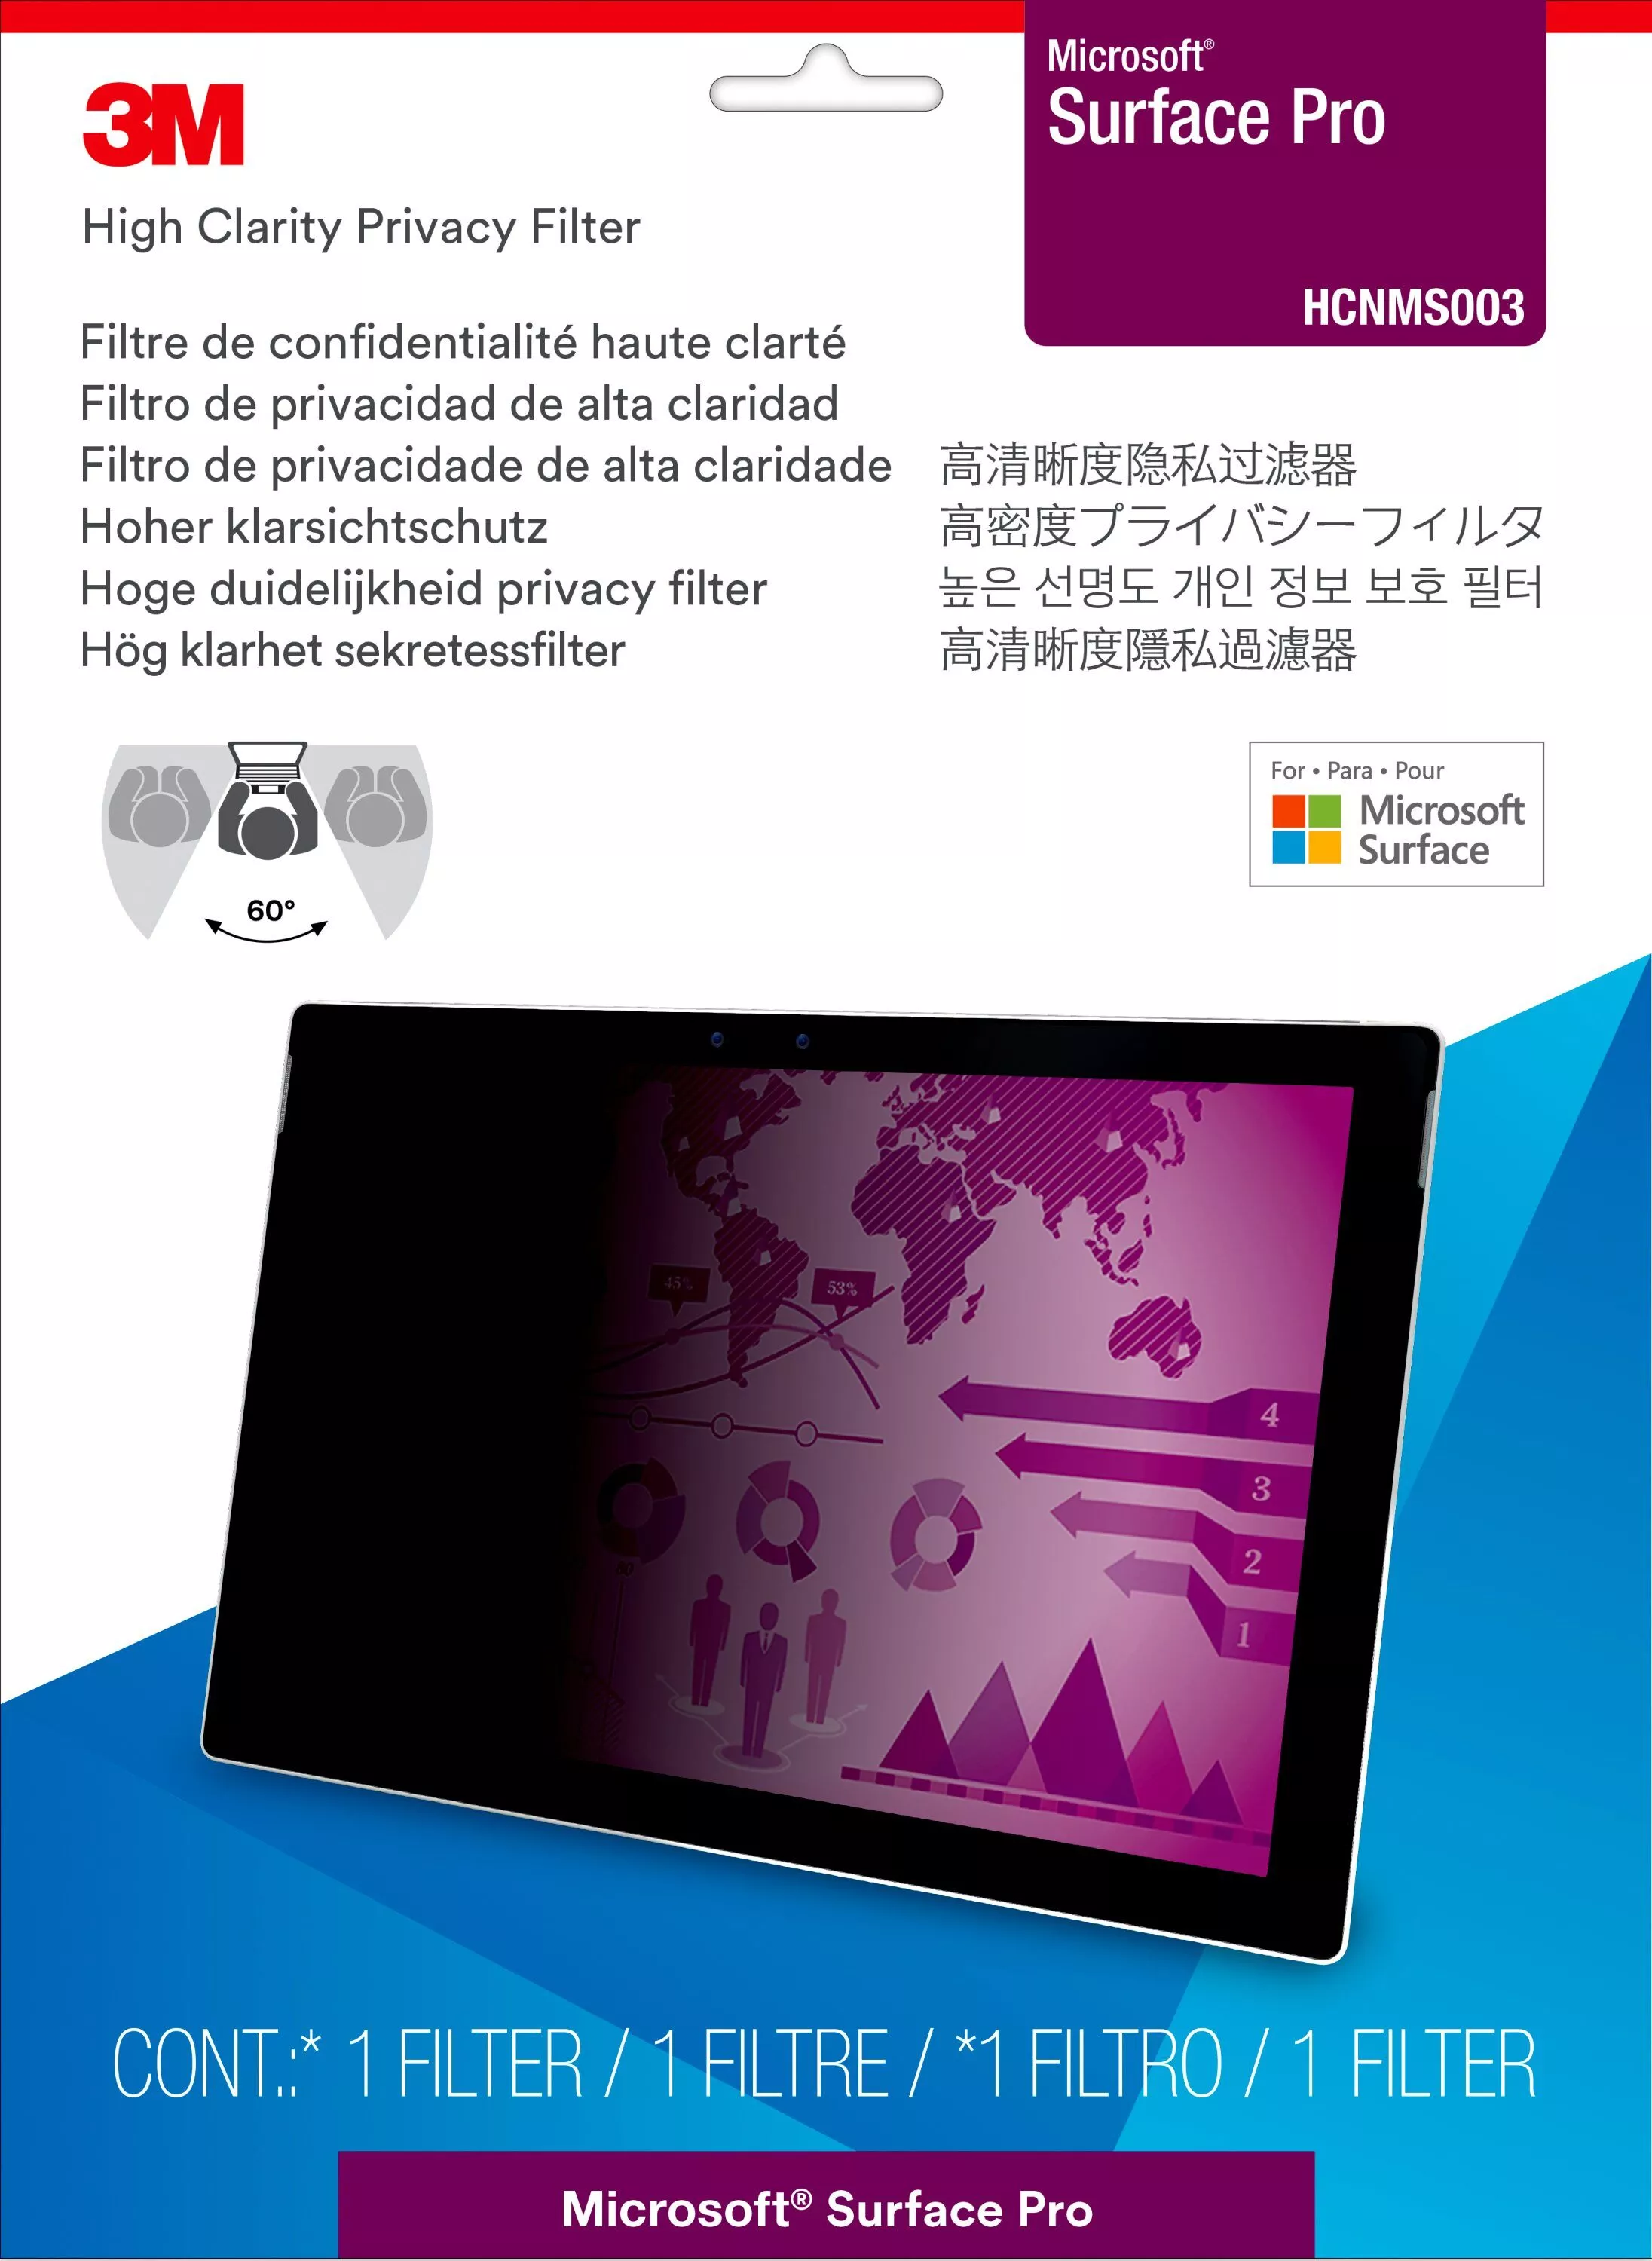 Vente 3M High Privacy Filter for MS Srf Laptop 3M au meilleur prix - visuel 2